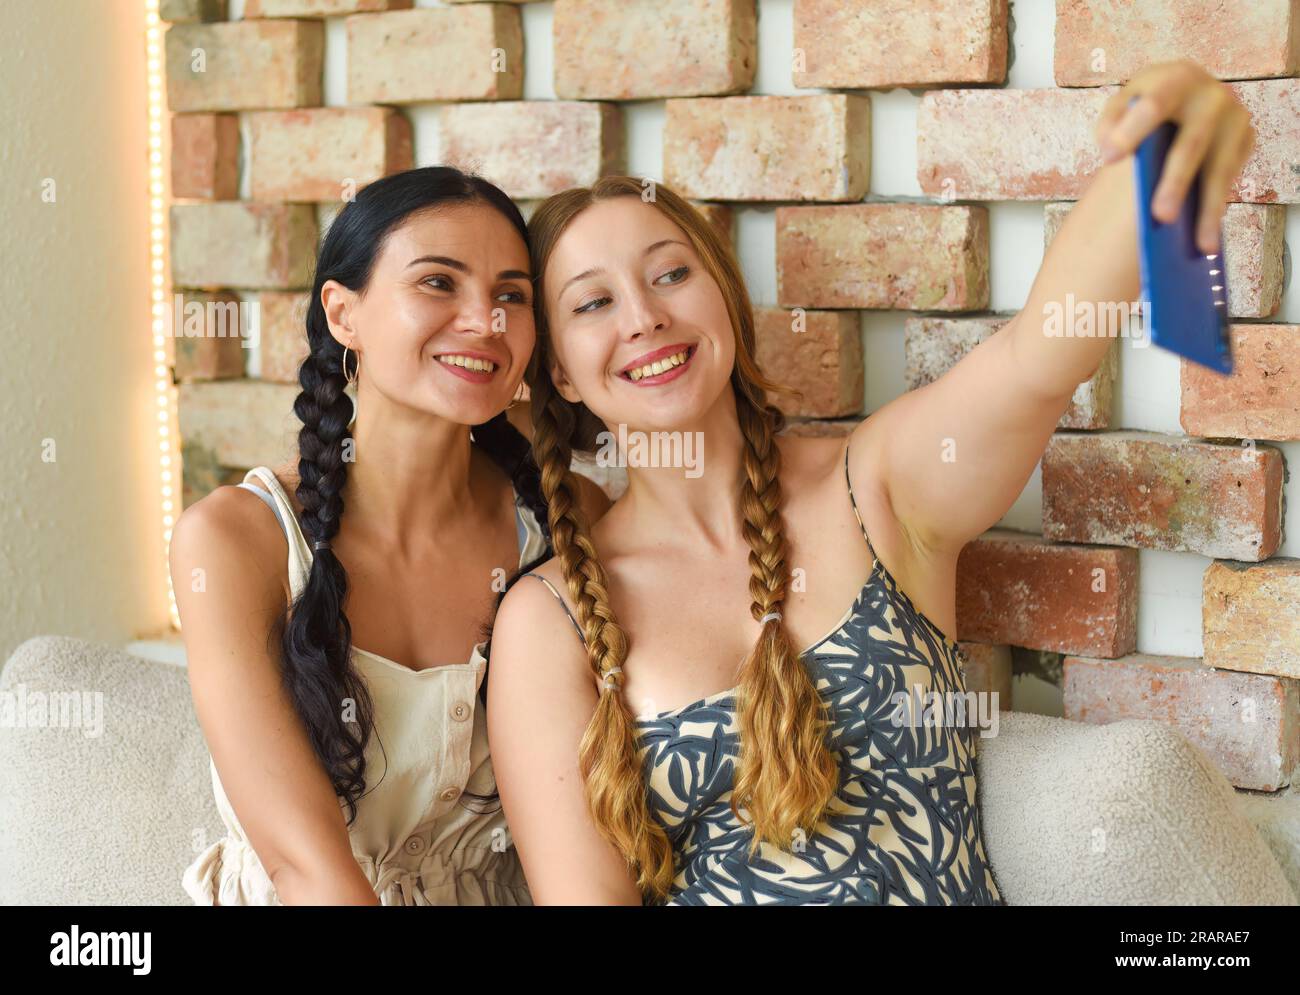 Ritratto di donna Ucraina (bruna) e donna russa (bionda) insieme a trecce che posa e scatta un selfie Foto Stock